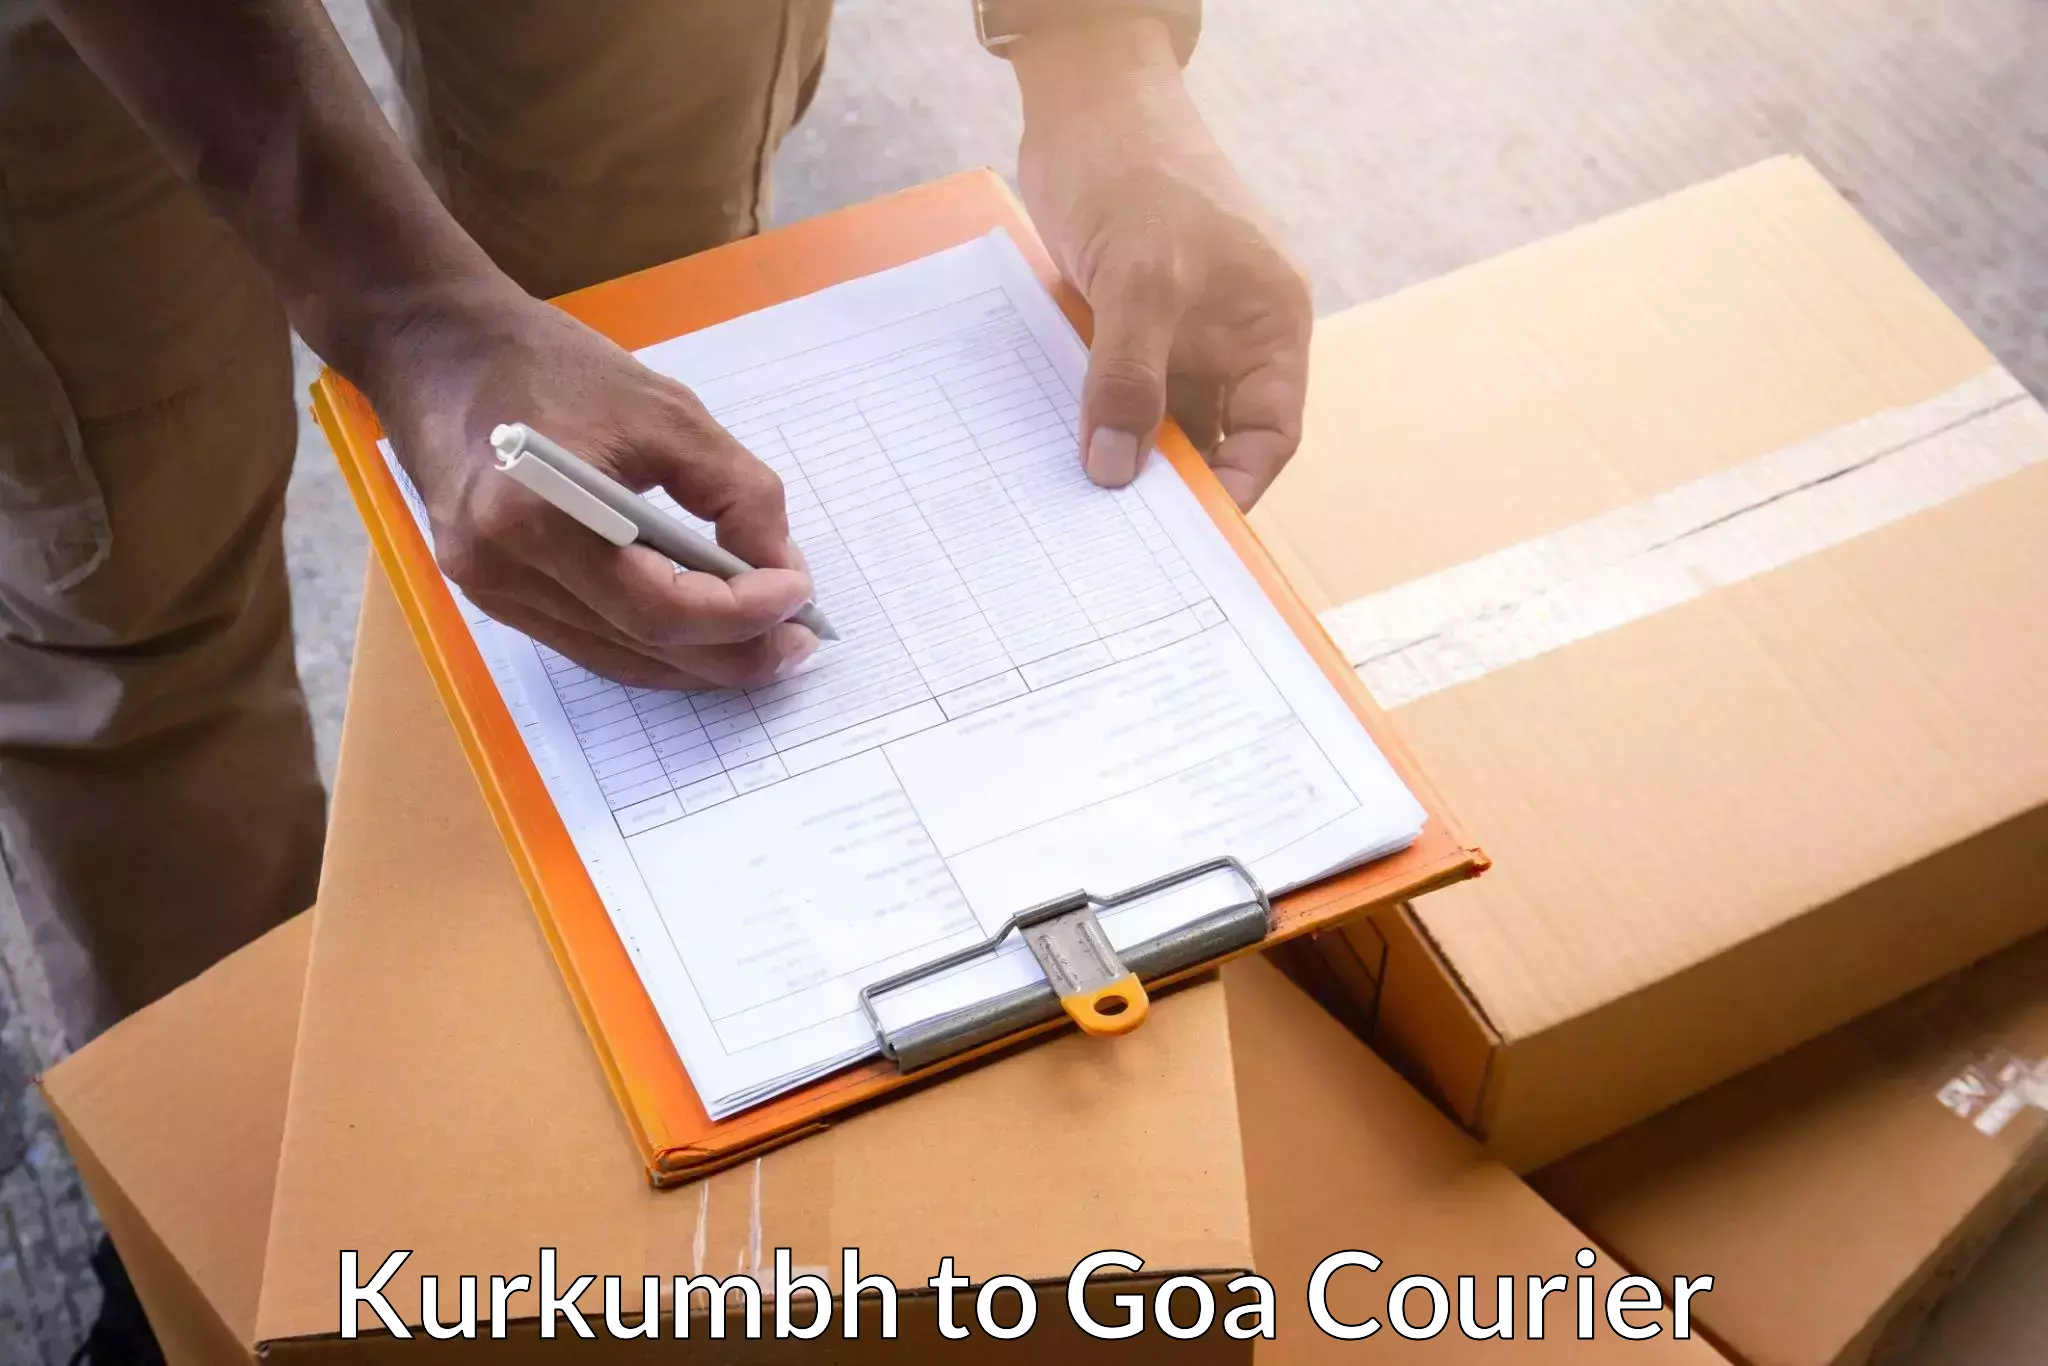 24/7 courier service Kurkumbh to Vasco da Gama